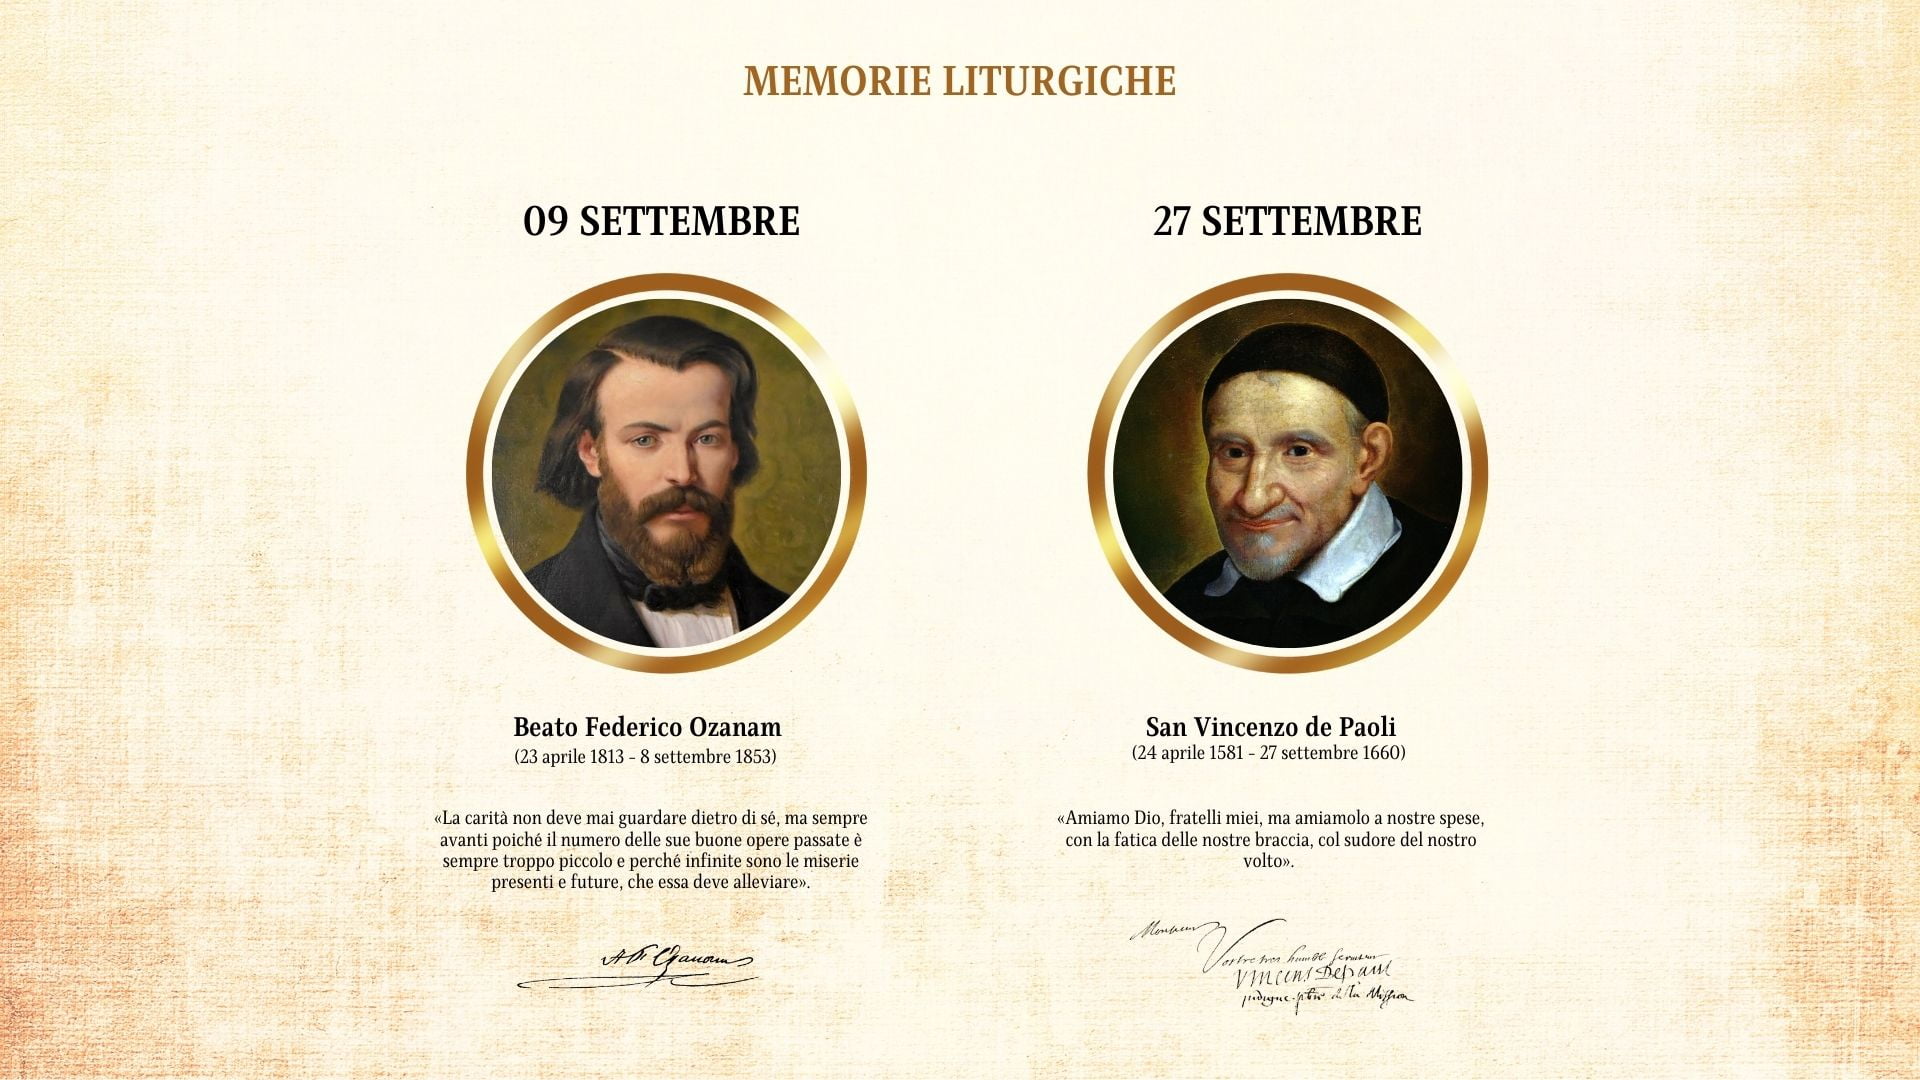 Memorie liturgiche di Federico Ozanam e San Vincenzo